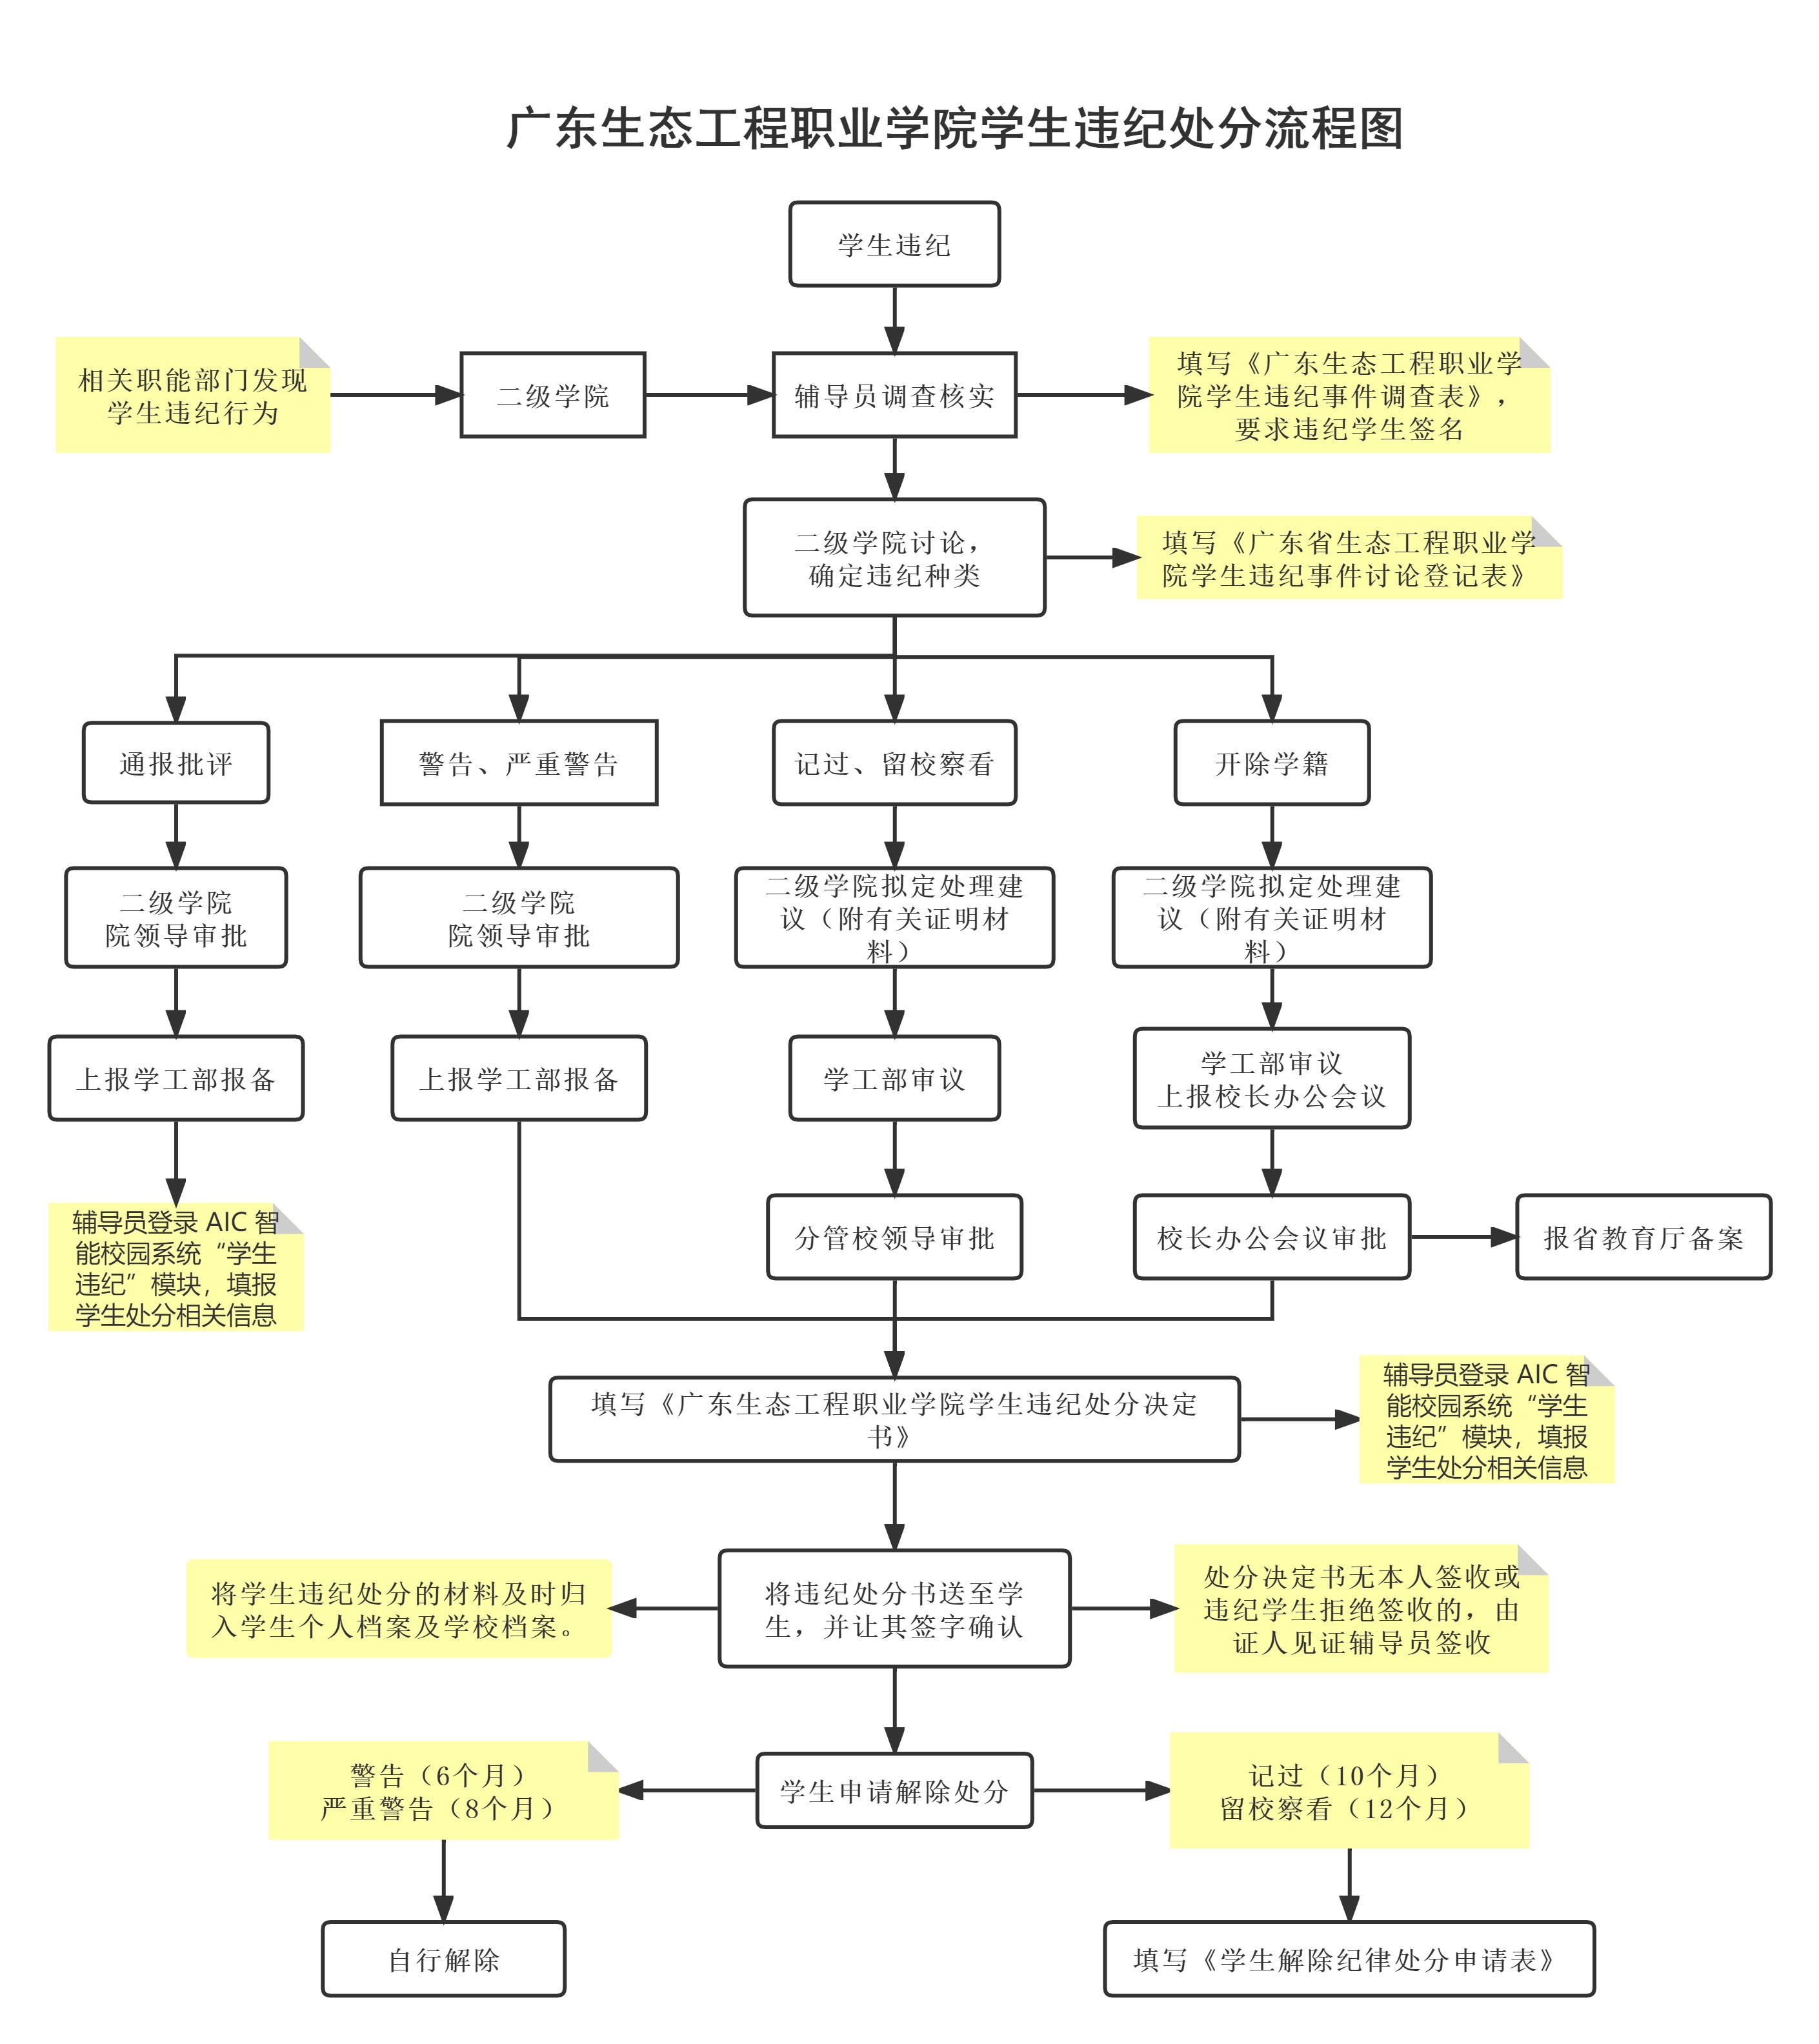 广东生态工程职业学院学生违纪处分流程图.jpg